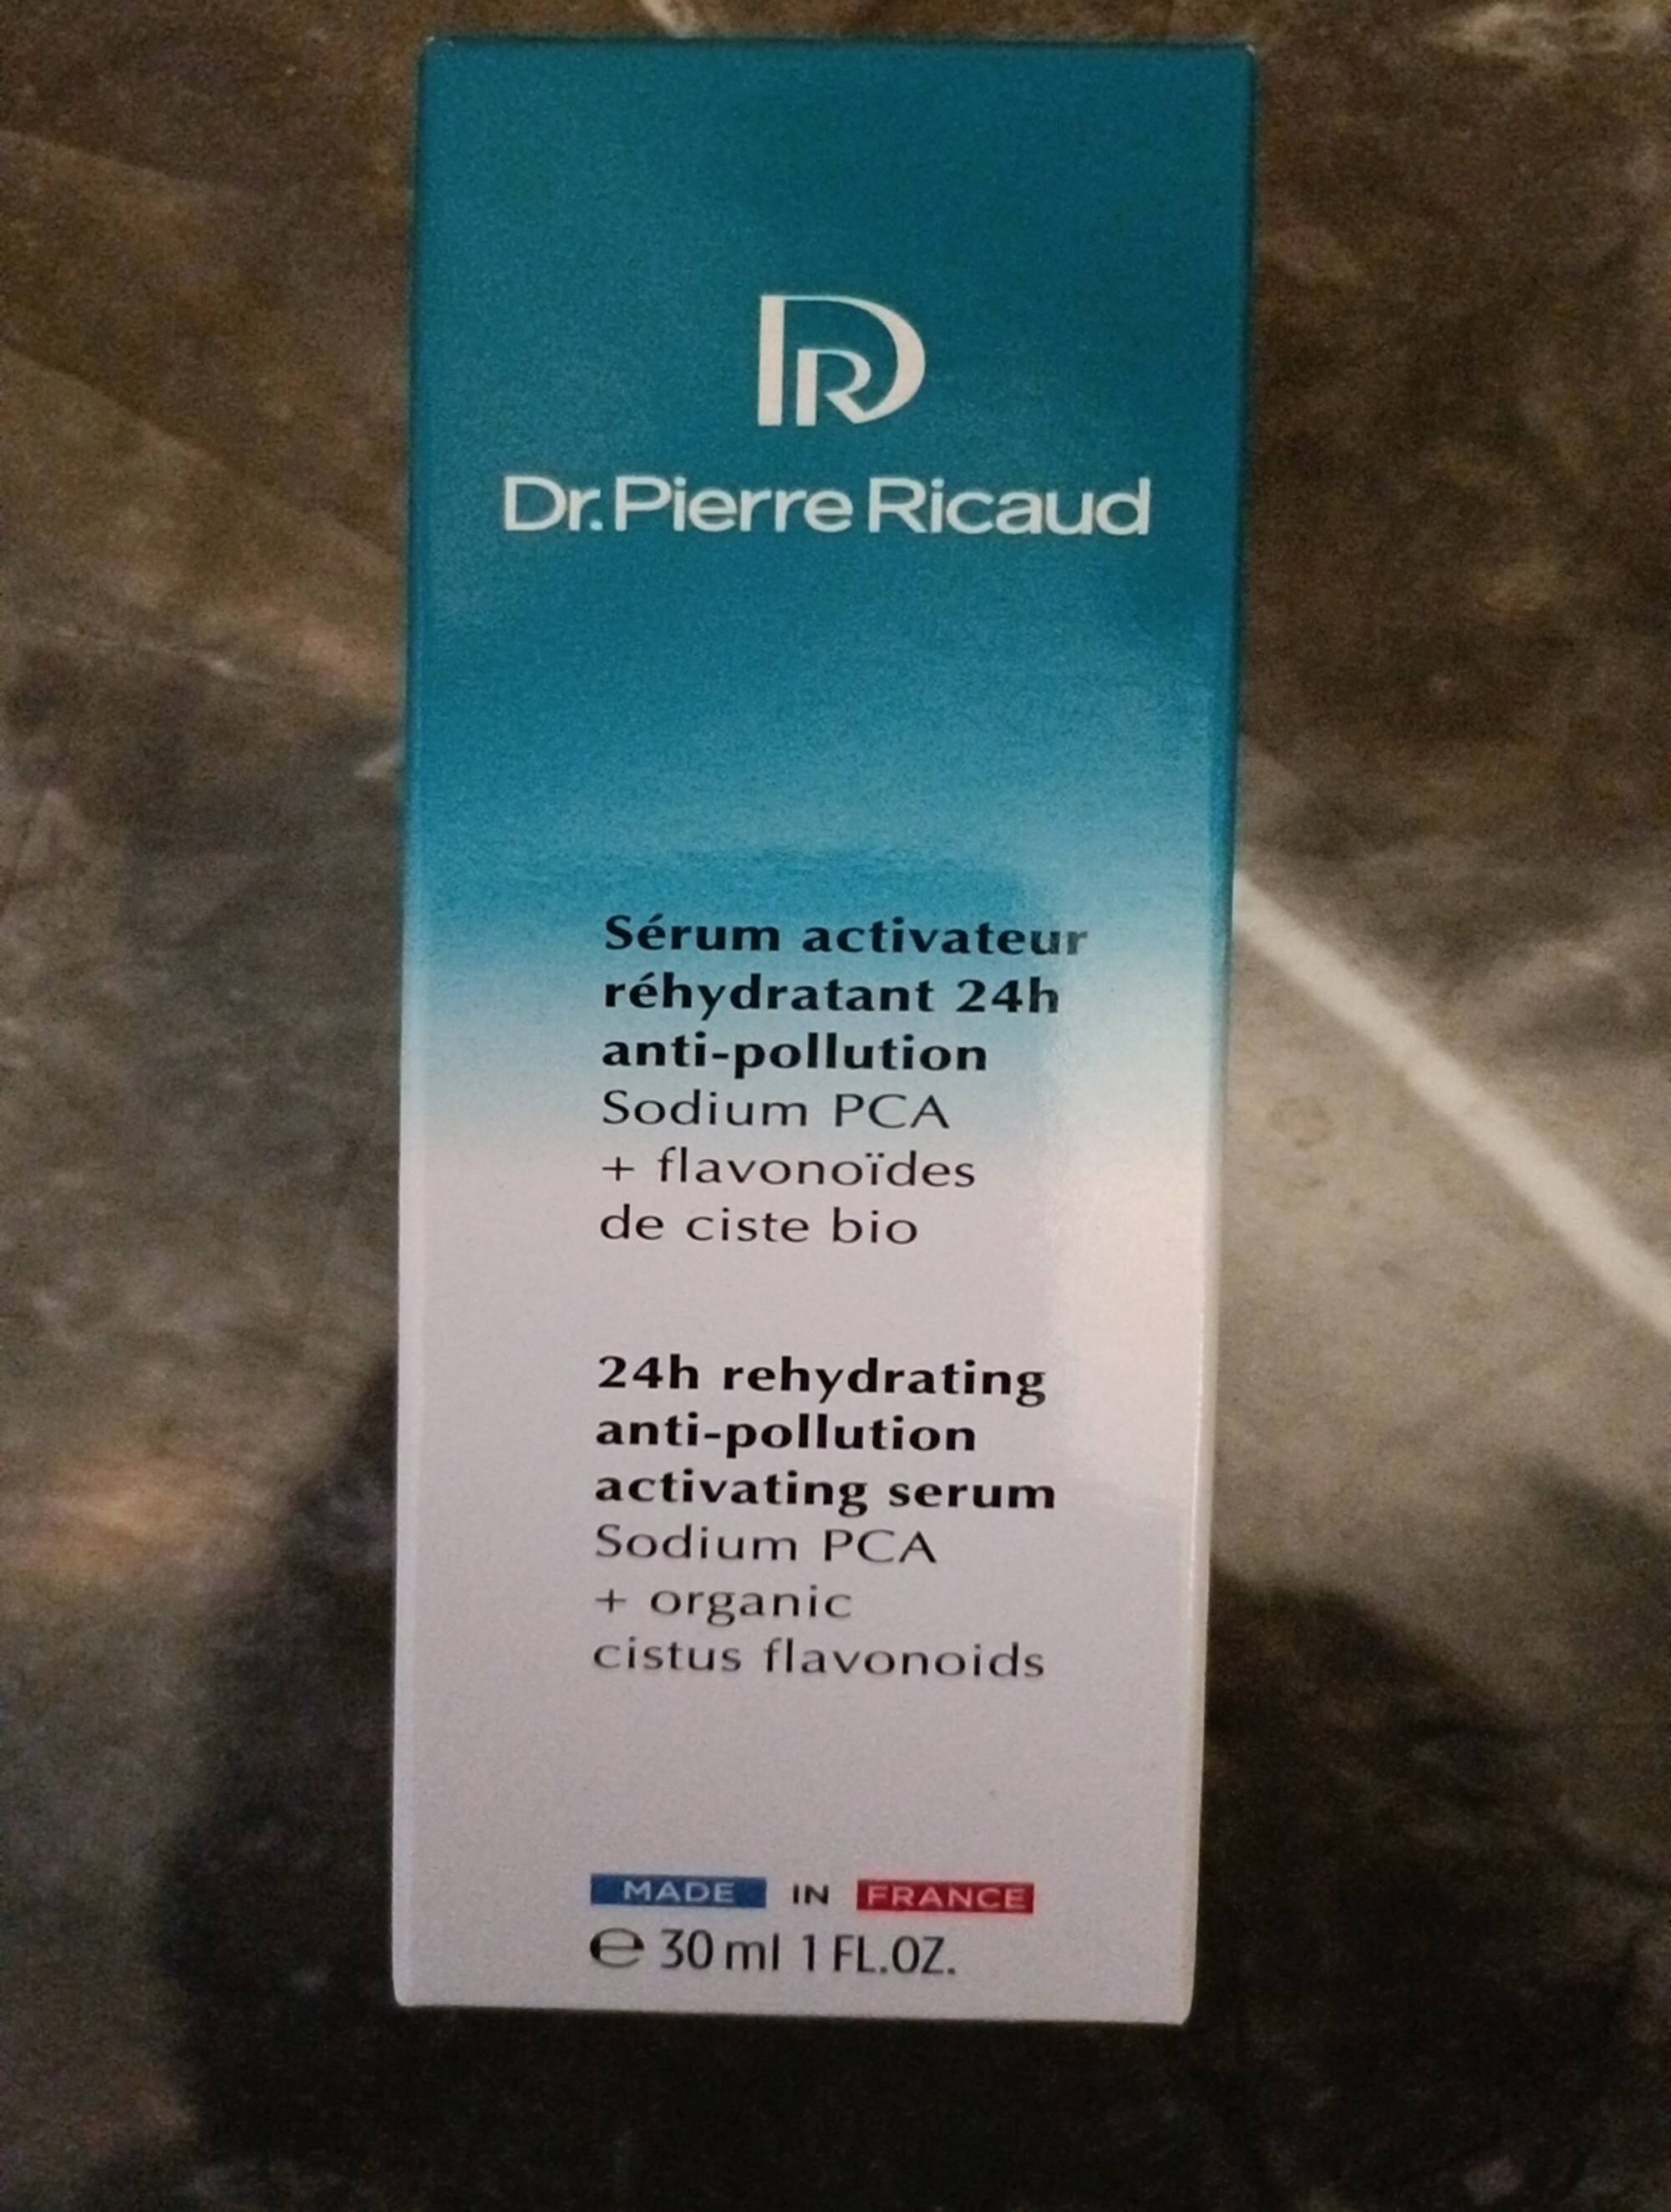 DR PIERRE RICAUD - Sérum activateur réhydratant 24h anti-pollution 